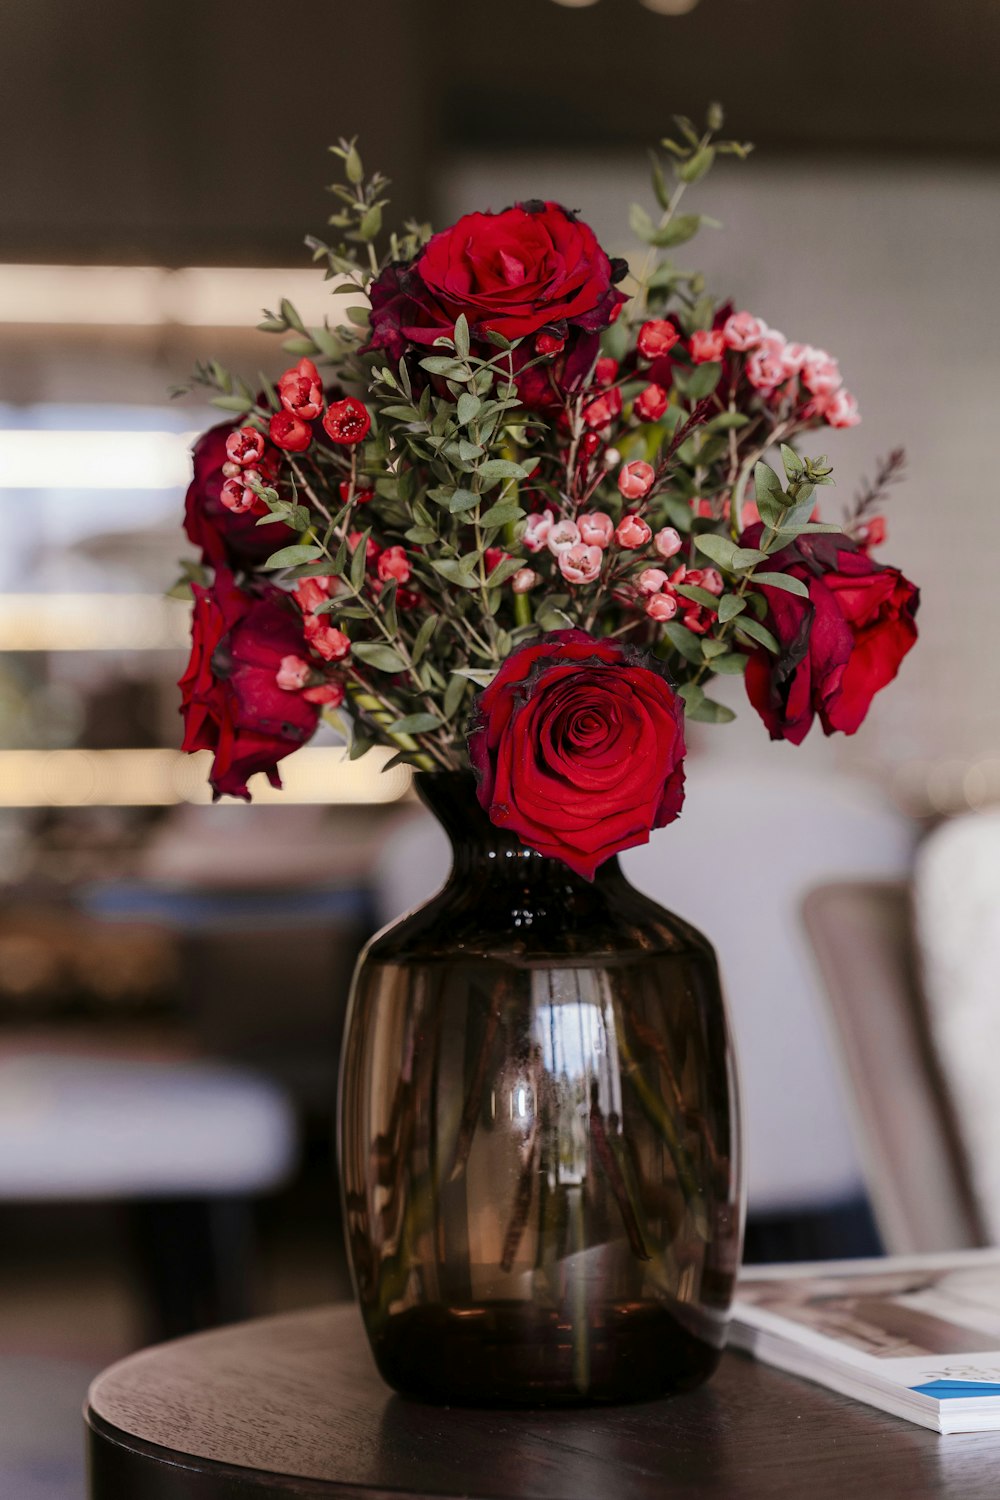 테이블 위에 놓인 빨간 꽃으로 가득 찬 꽃병